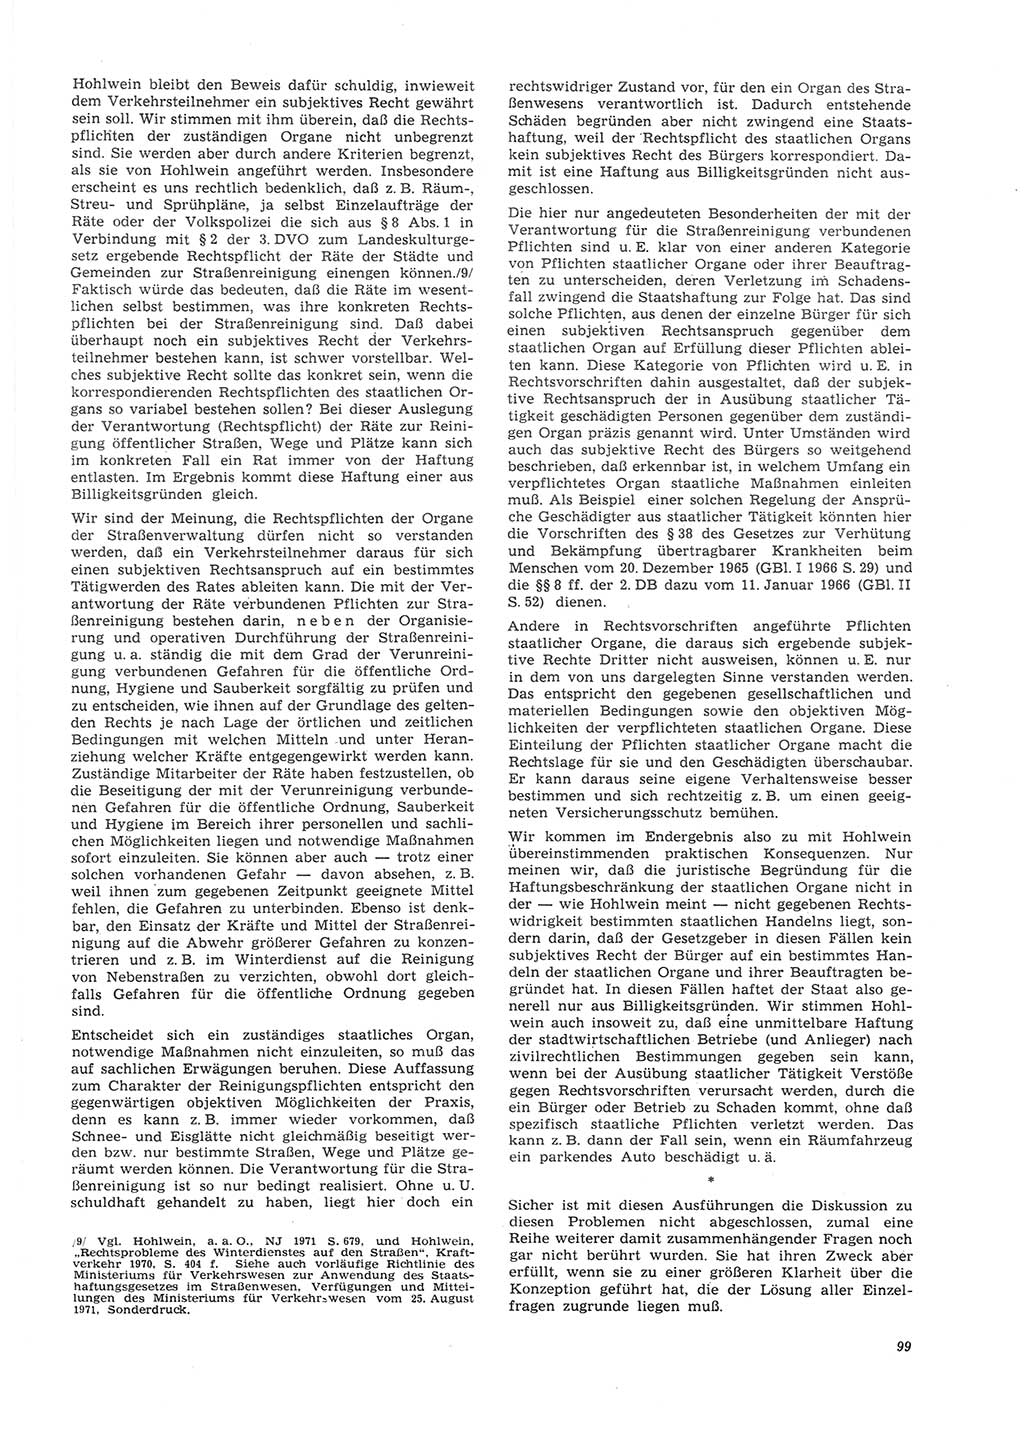 Neue Justiz (NJ), Zeitschrift für Recht und Rechtswissenschaft [Deutsche Demokratische Republik (DDR)], 26. Jahrgang 1972, Seite 99 (NJ DDR 1972, S. 99)